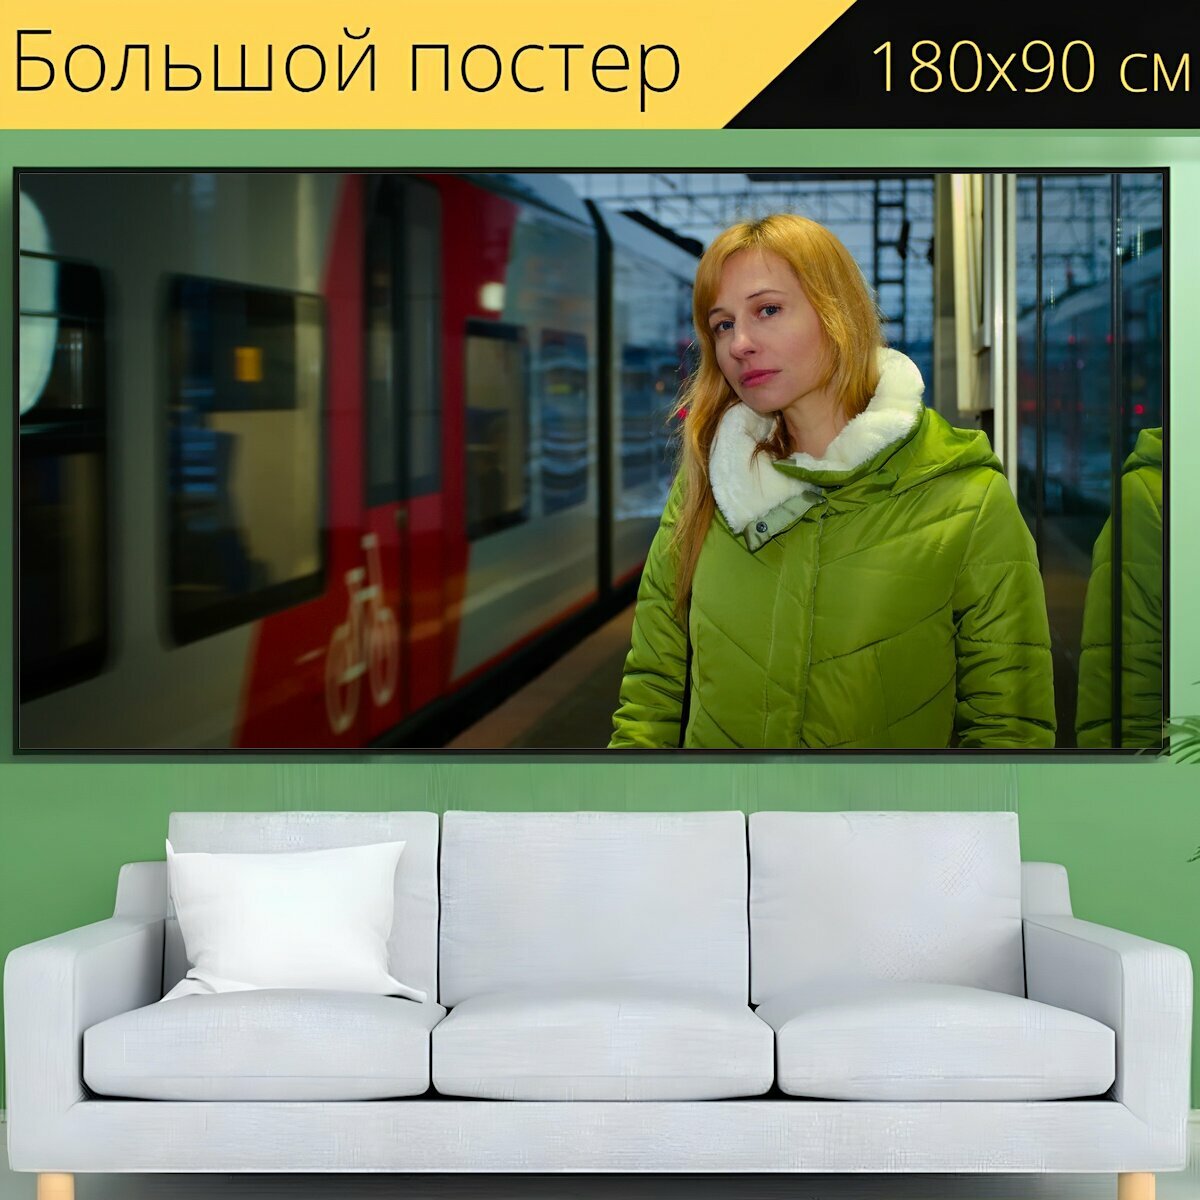 Большой постер "Поезд, метро, состав" 180 x 90 см. для интерьера